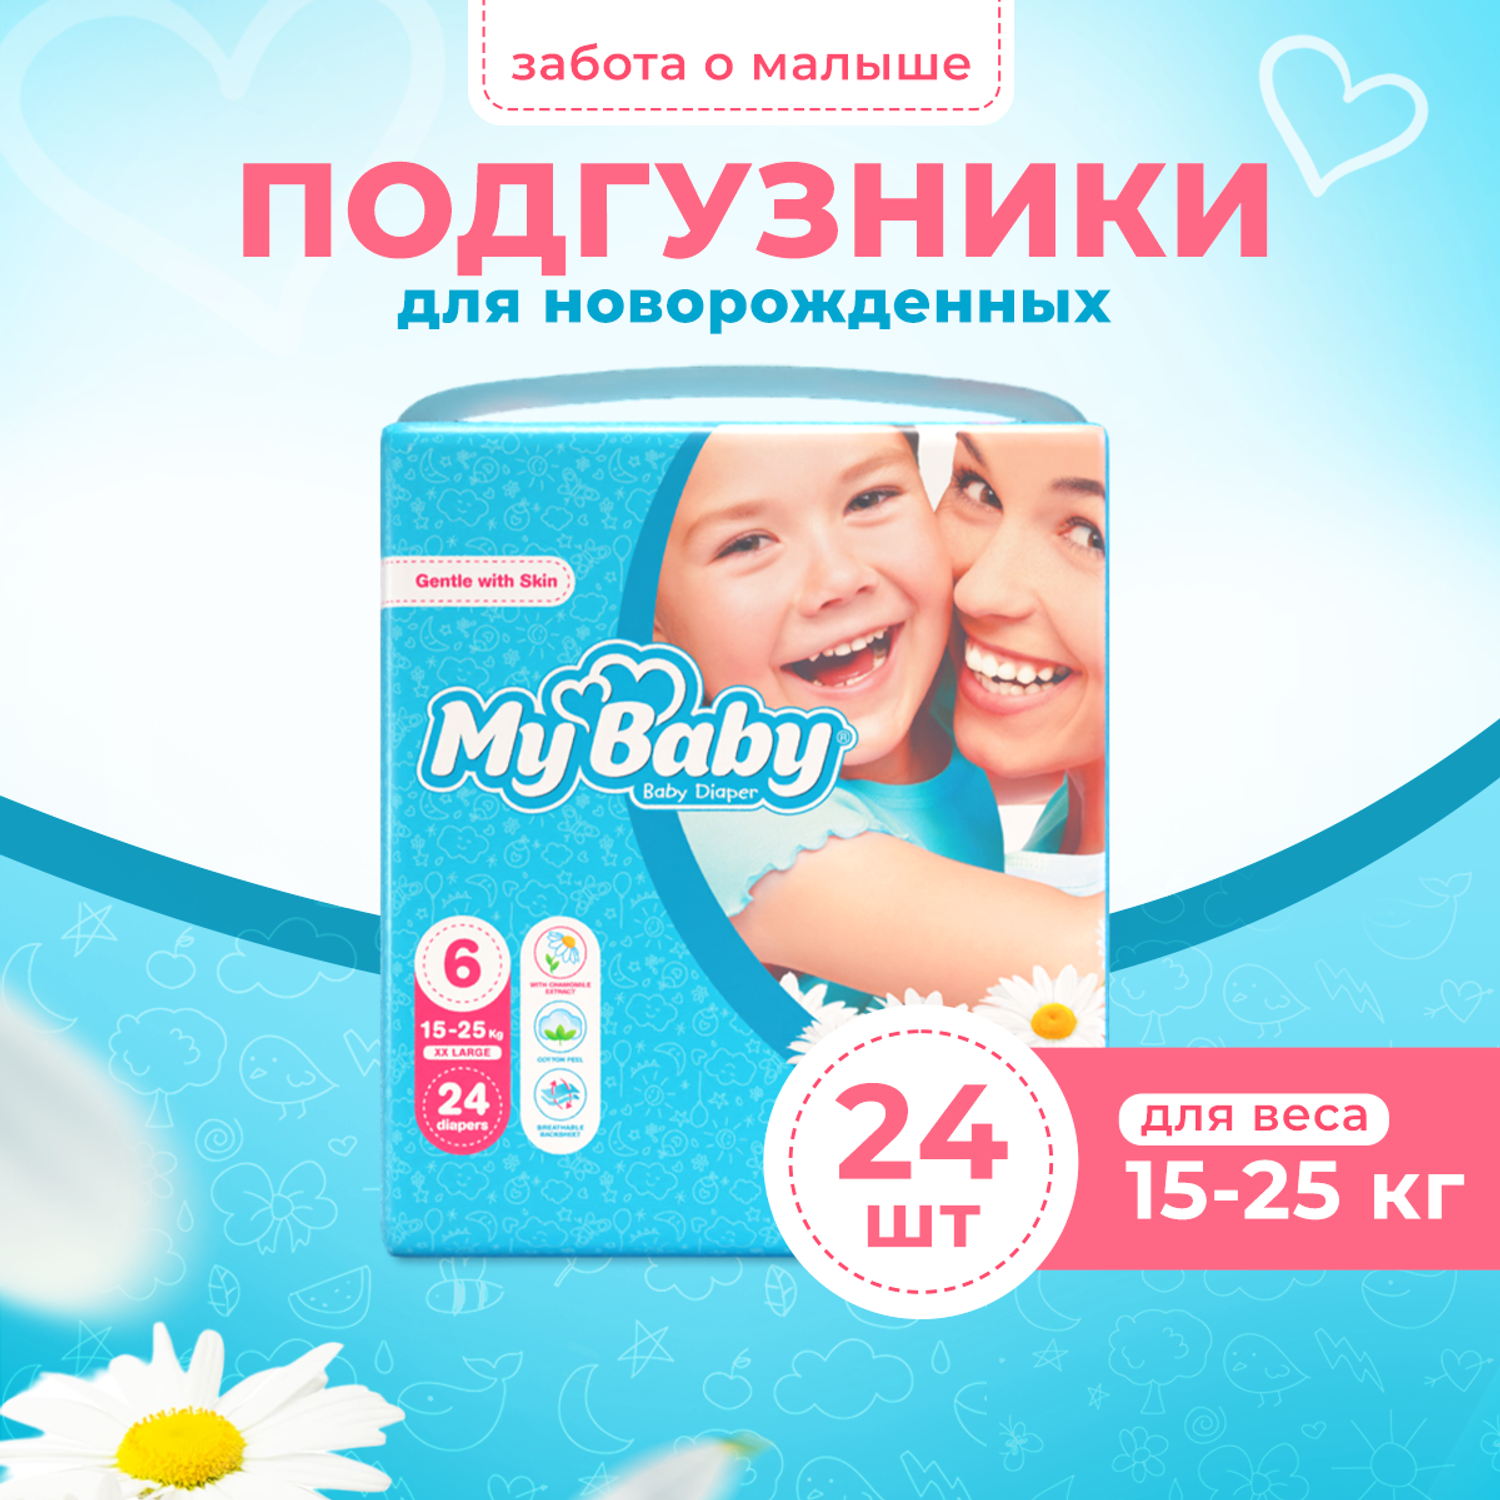 Подгузники My baby Baby diaper Economy размер 6 (15-25 кг) - фото 1